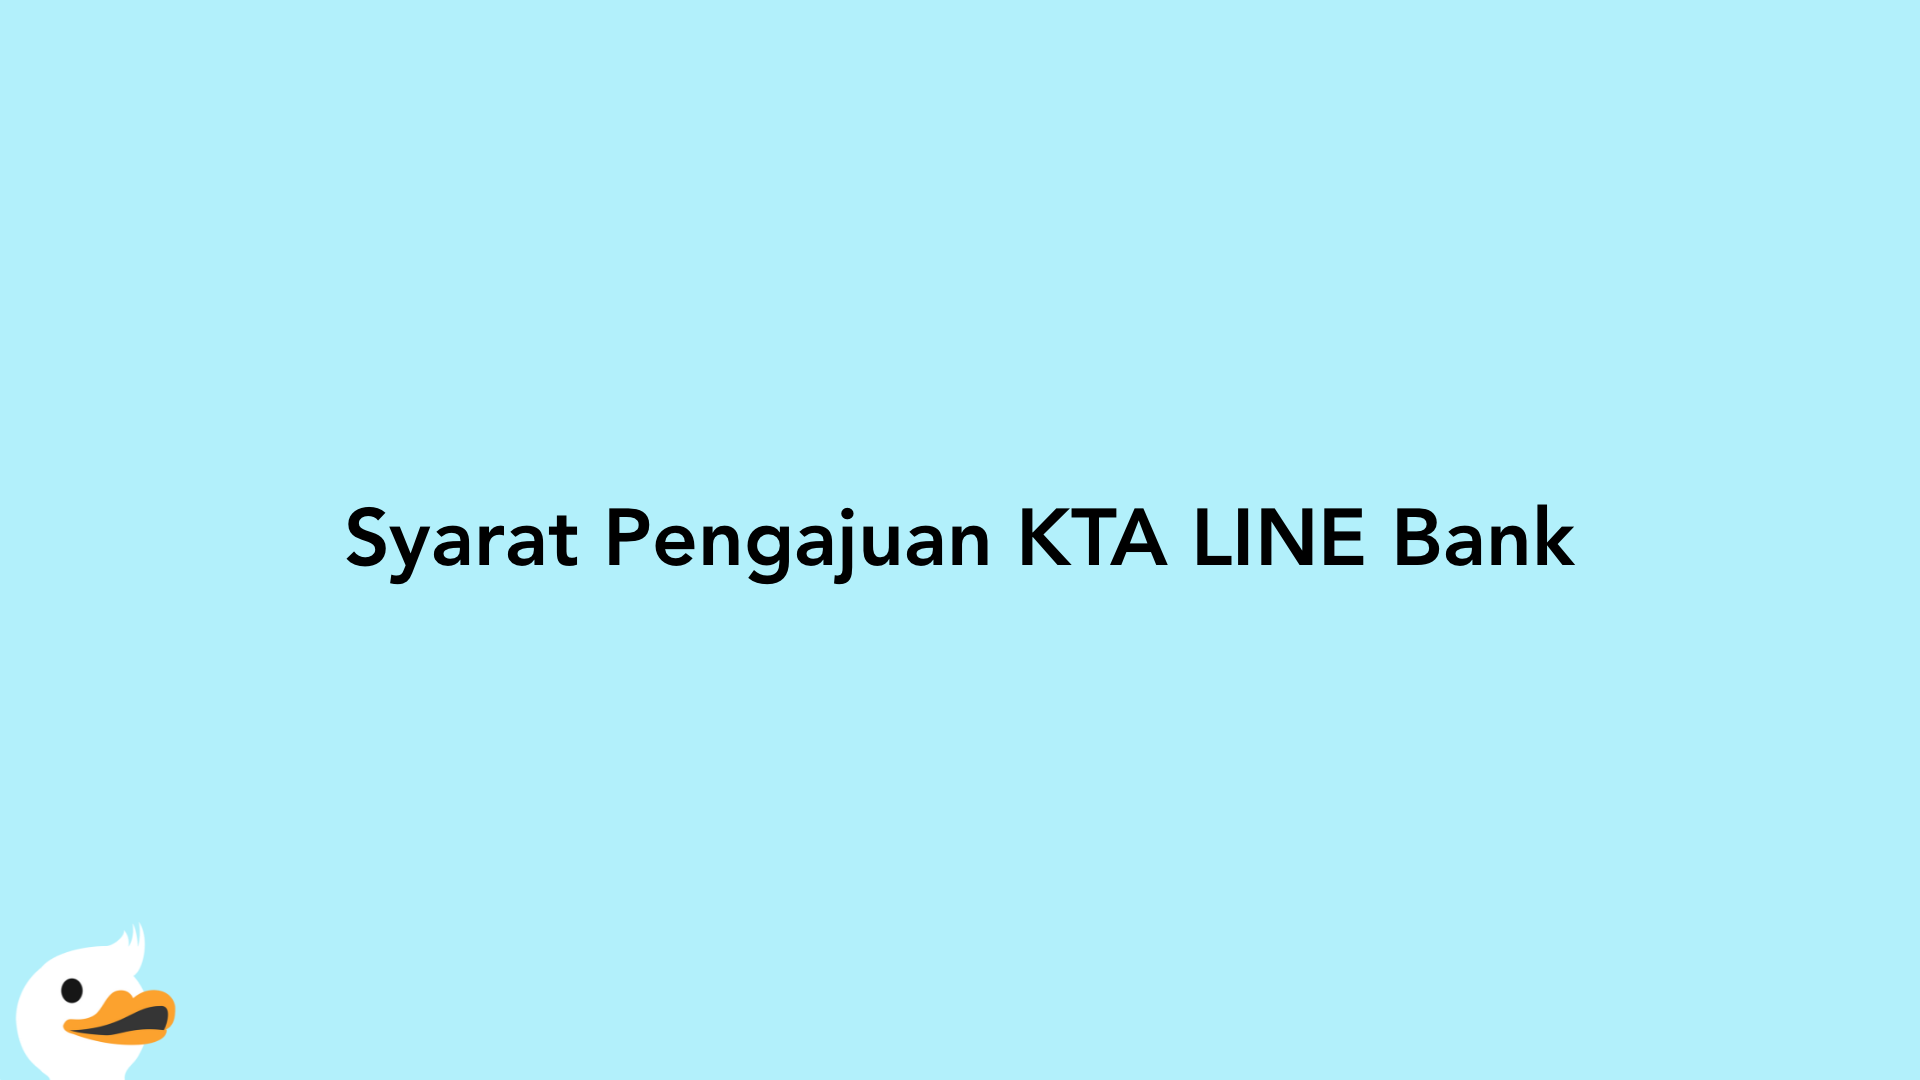 Syarat Pengajuan KTA LINE Bank